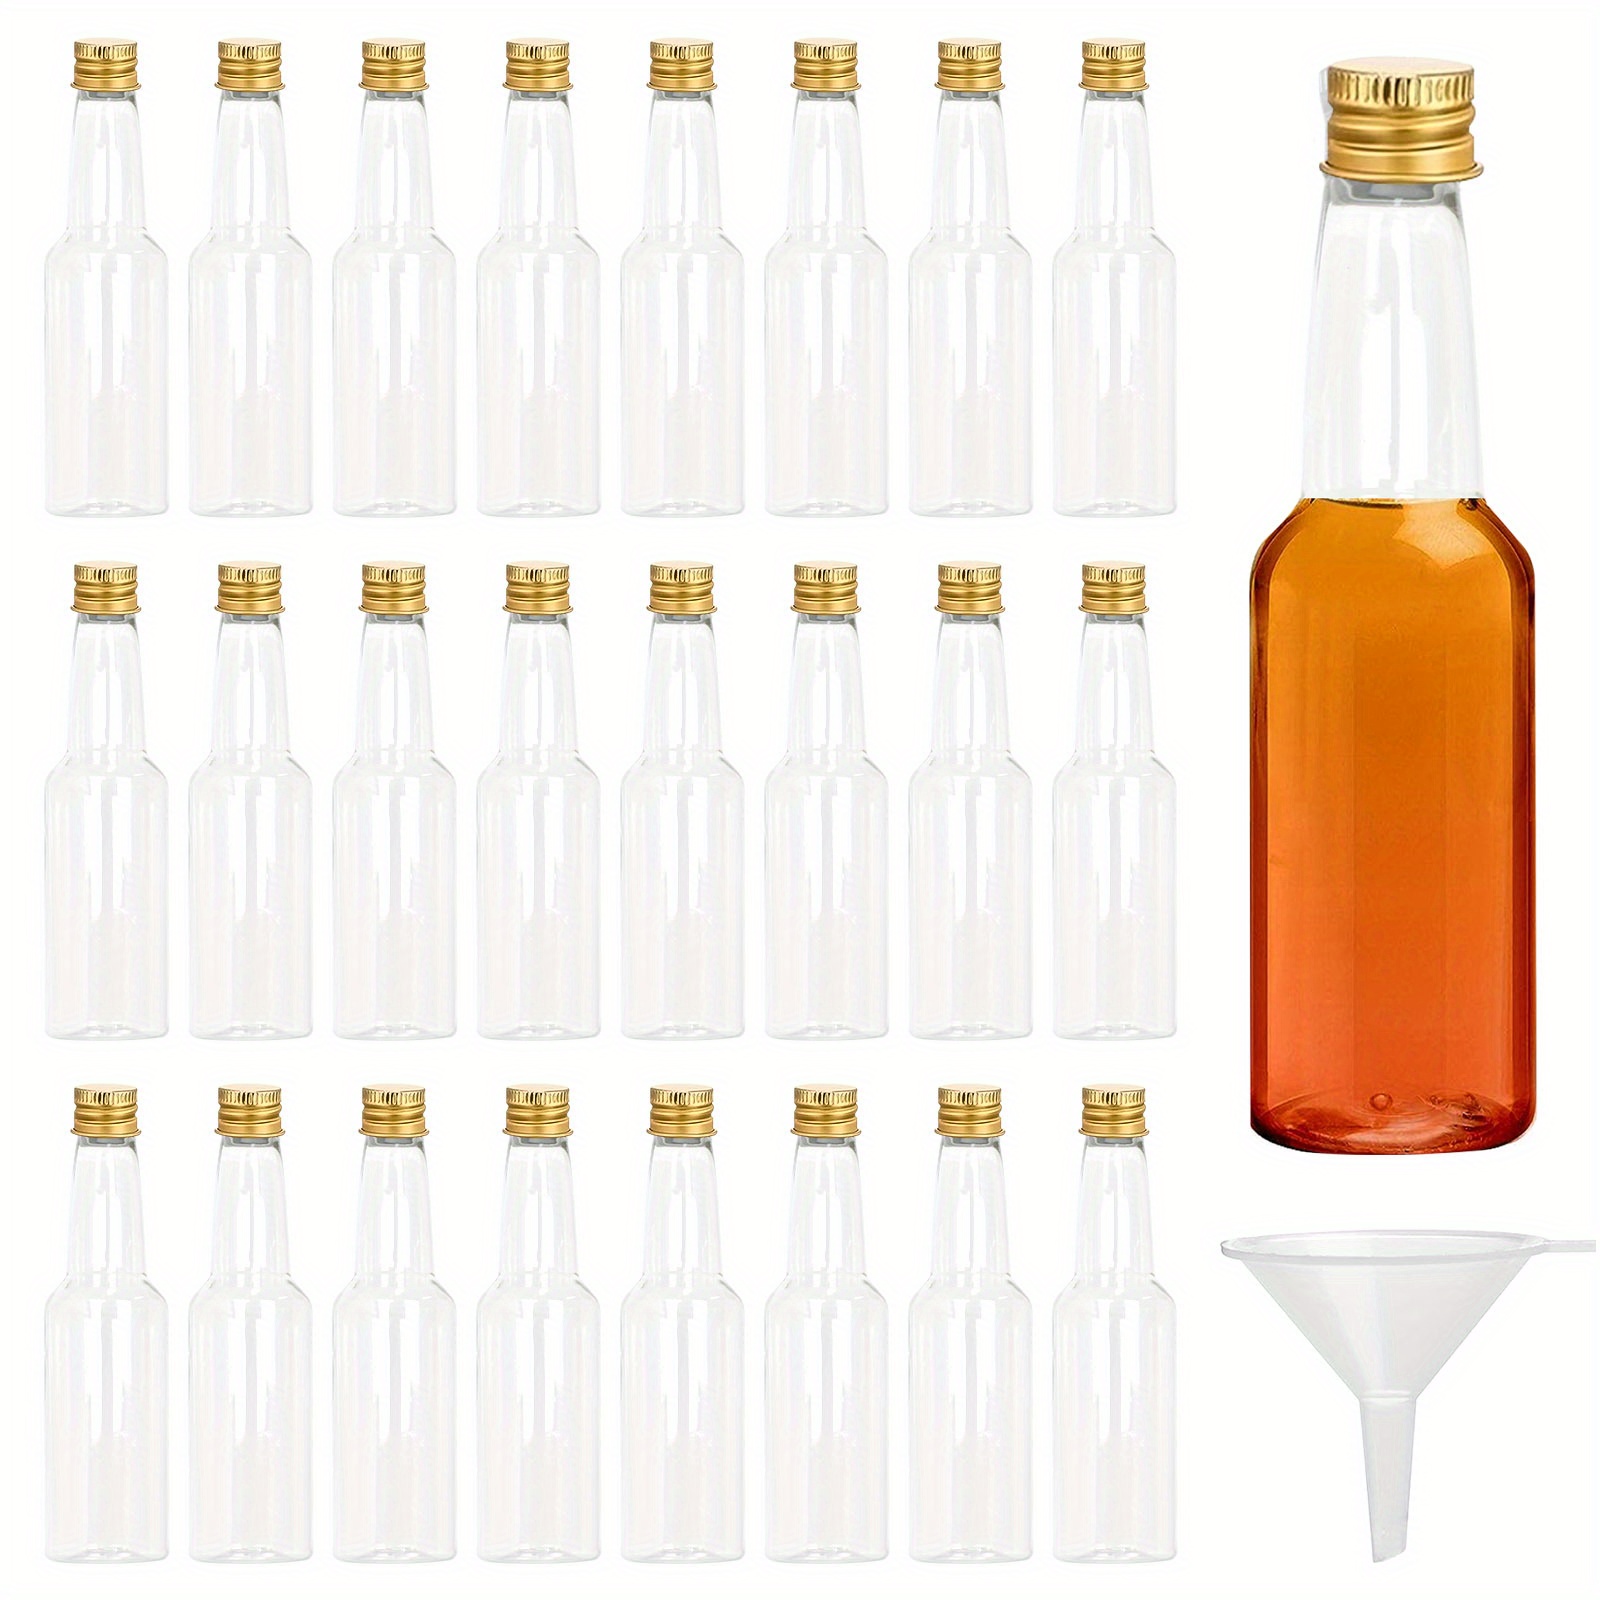  Paquete de 30 mini botellas de licor, botellas de alcohol de  plástico vacías con tapa negra, botellas de alcohol de 2.4 onzas líquidas  con 5 embudos, 30 etiquetas y cuerdas, botellas